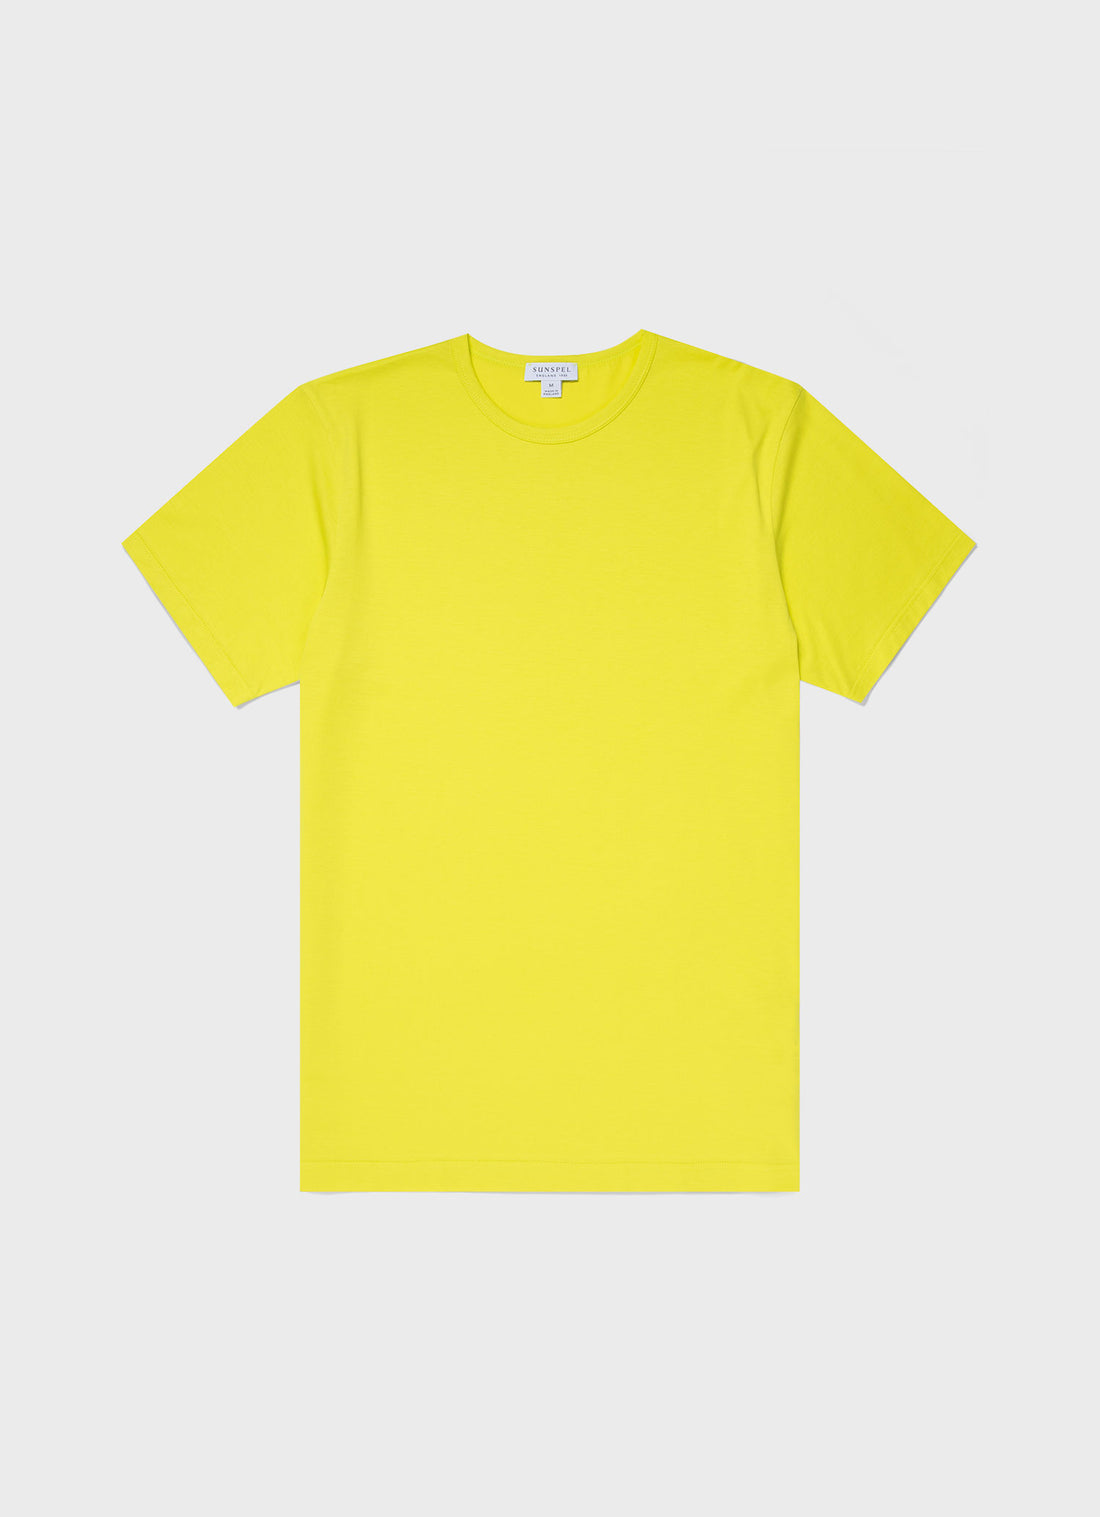 Men's Classic T-shirt in Citrus